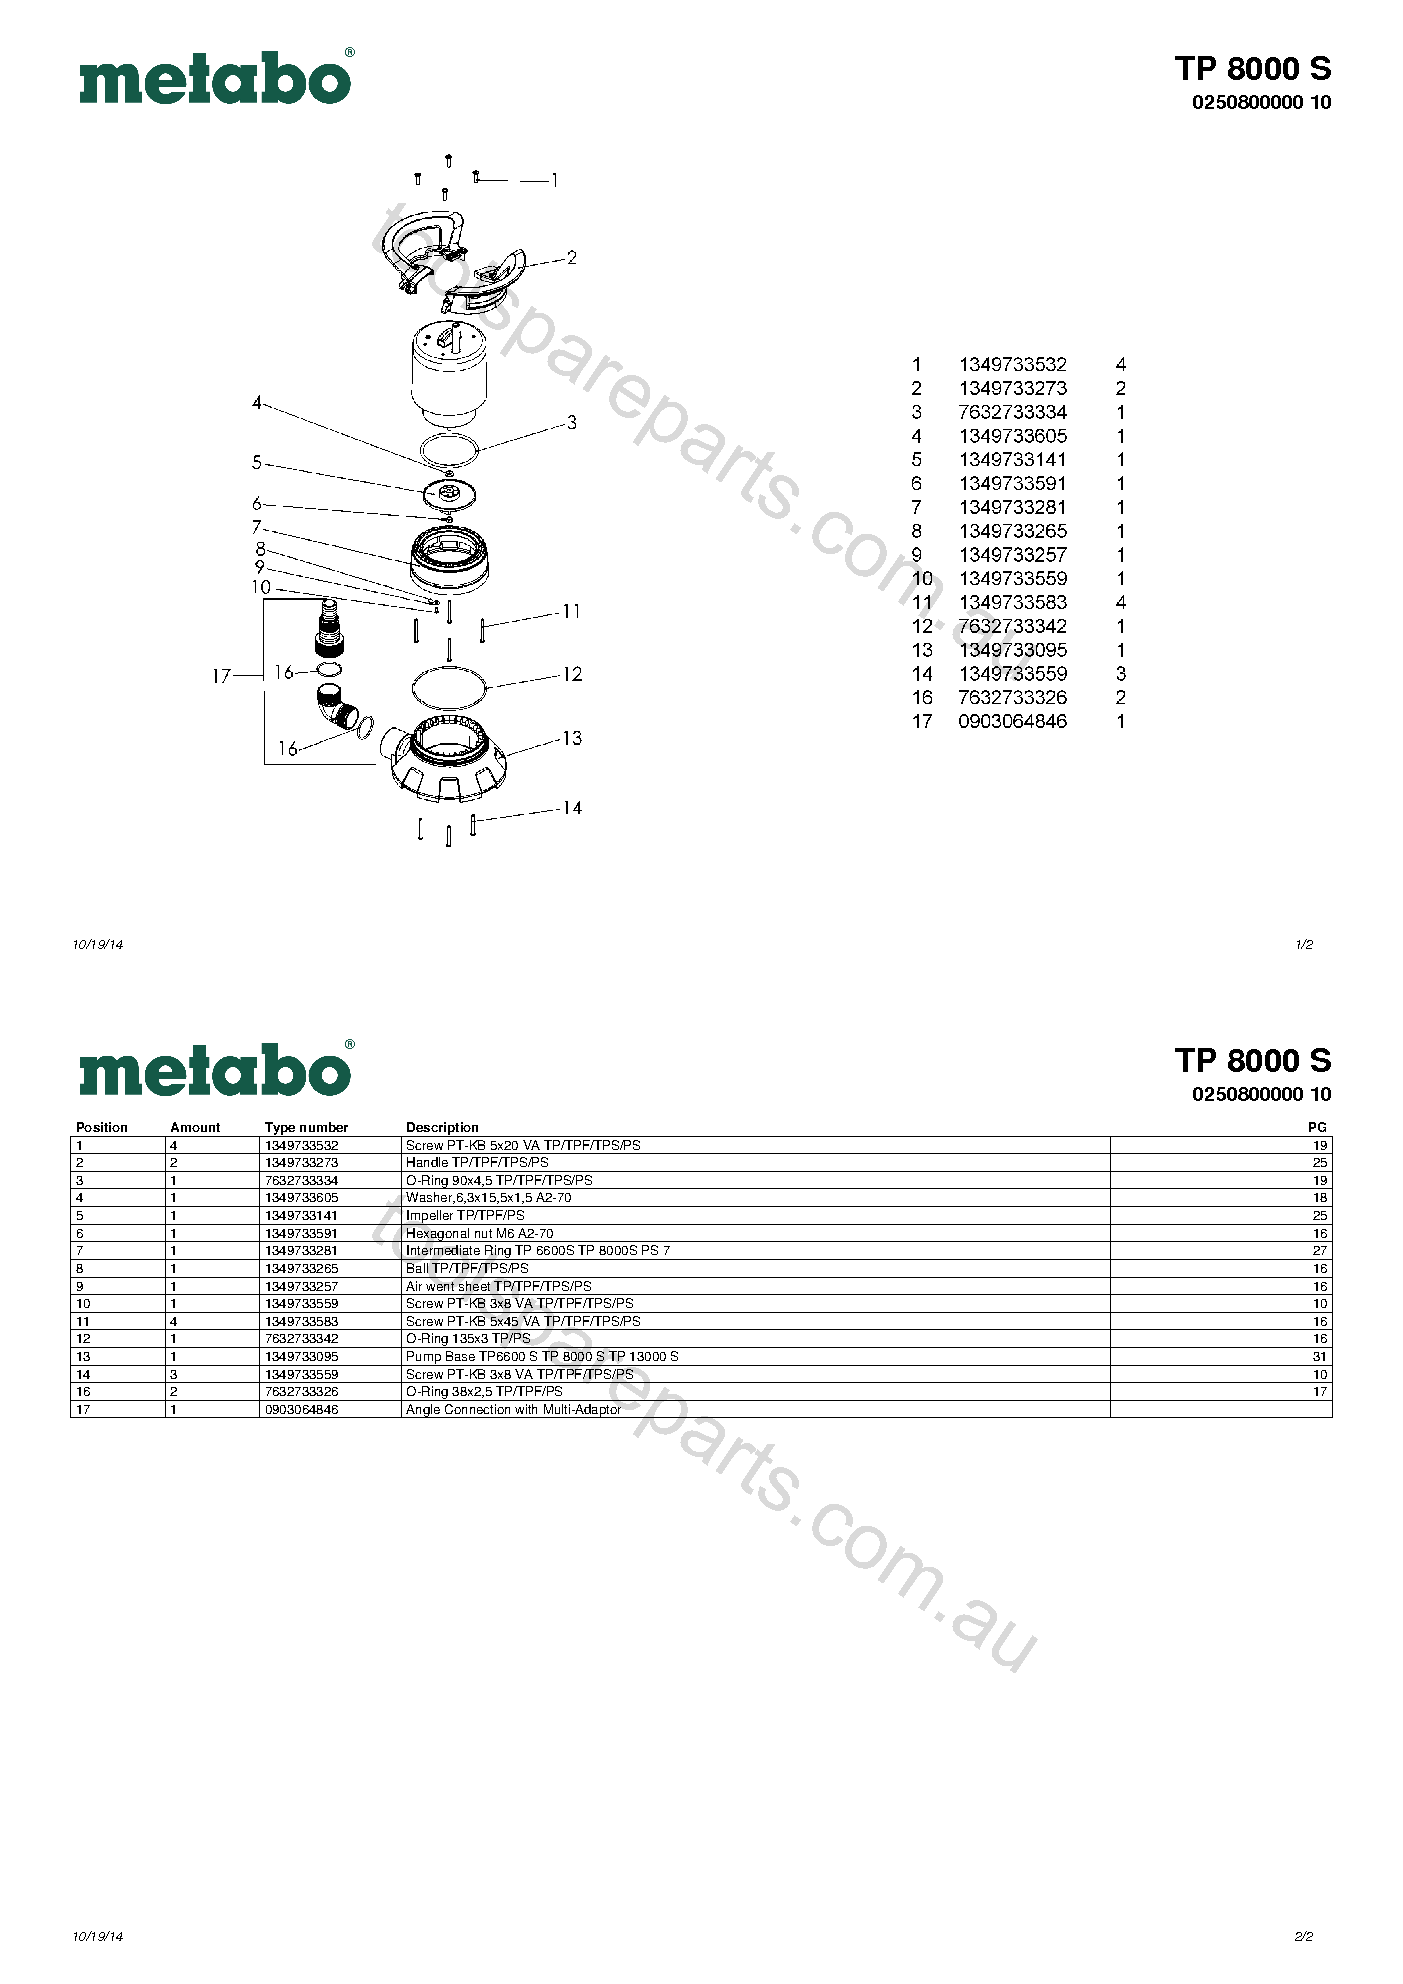 Metabo TP 8000 S 0250800000 10  Diagram 1